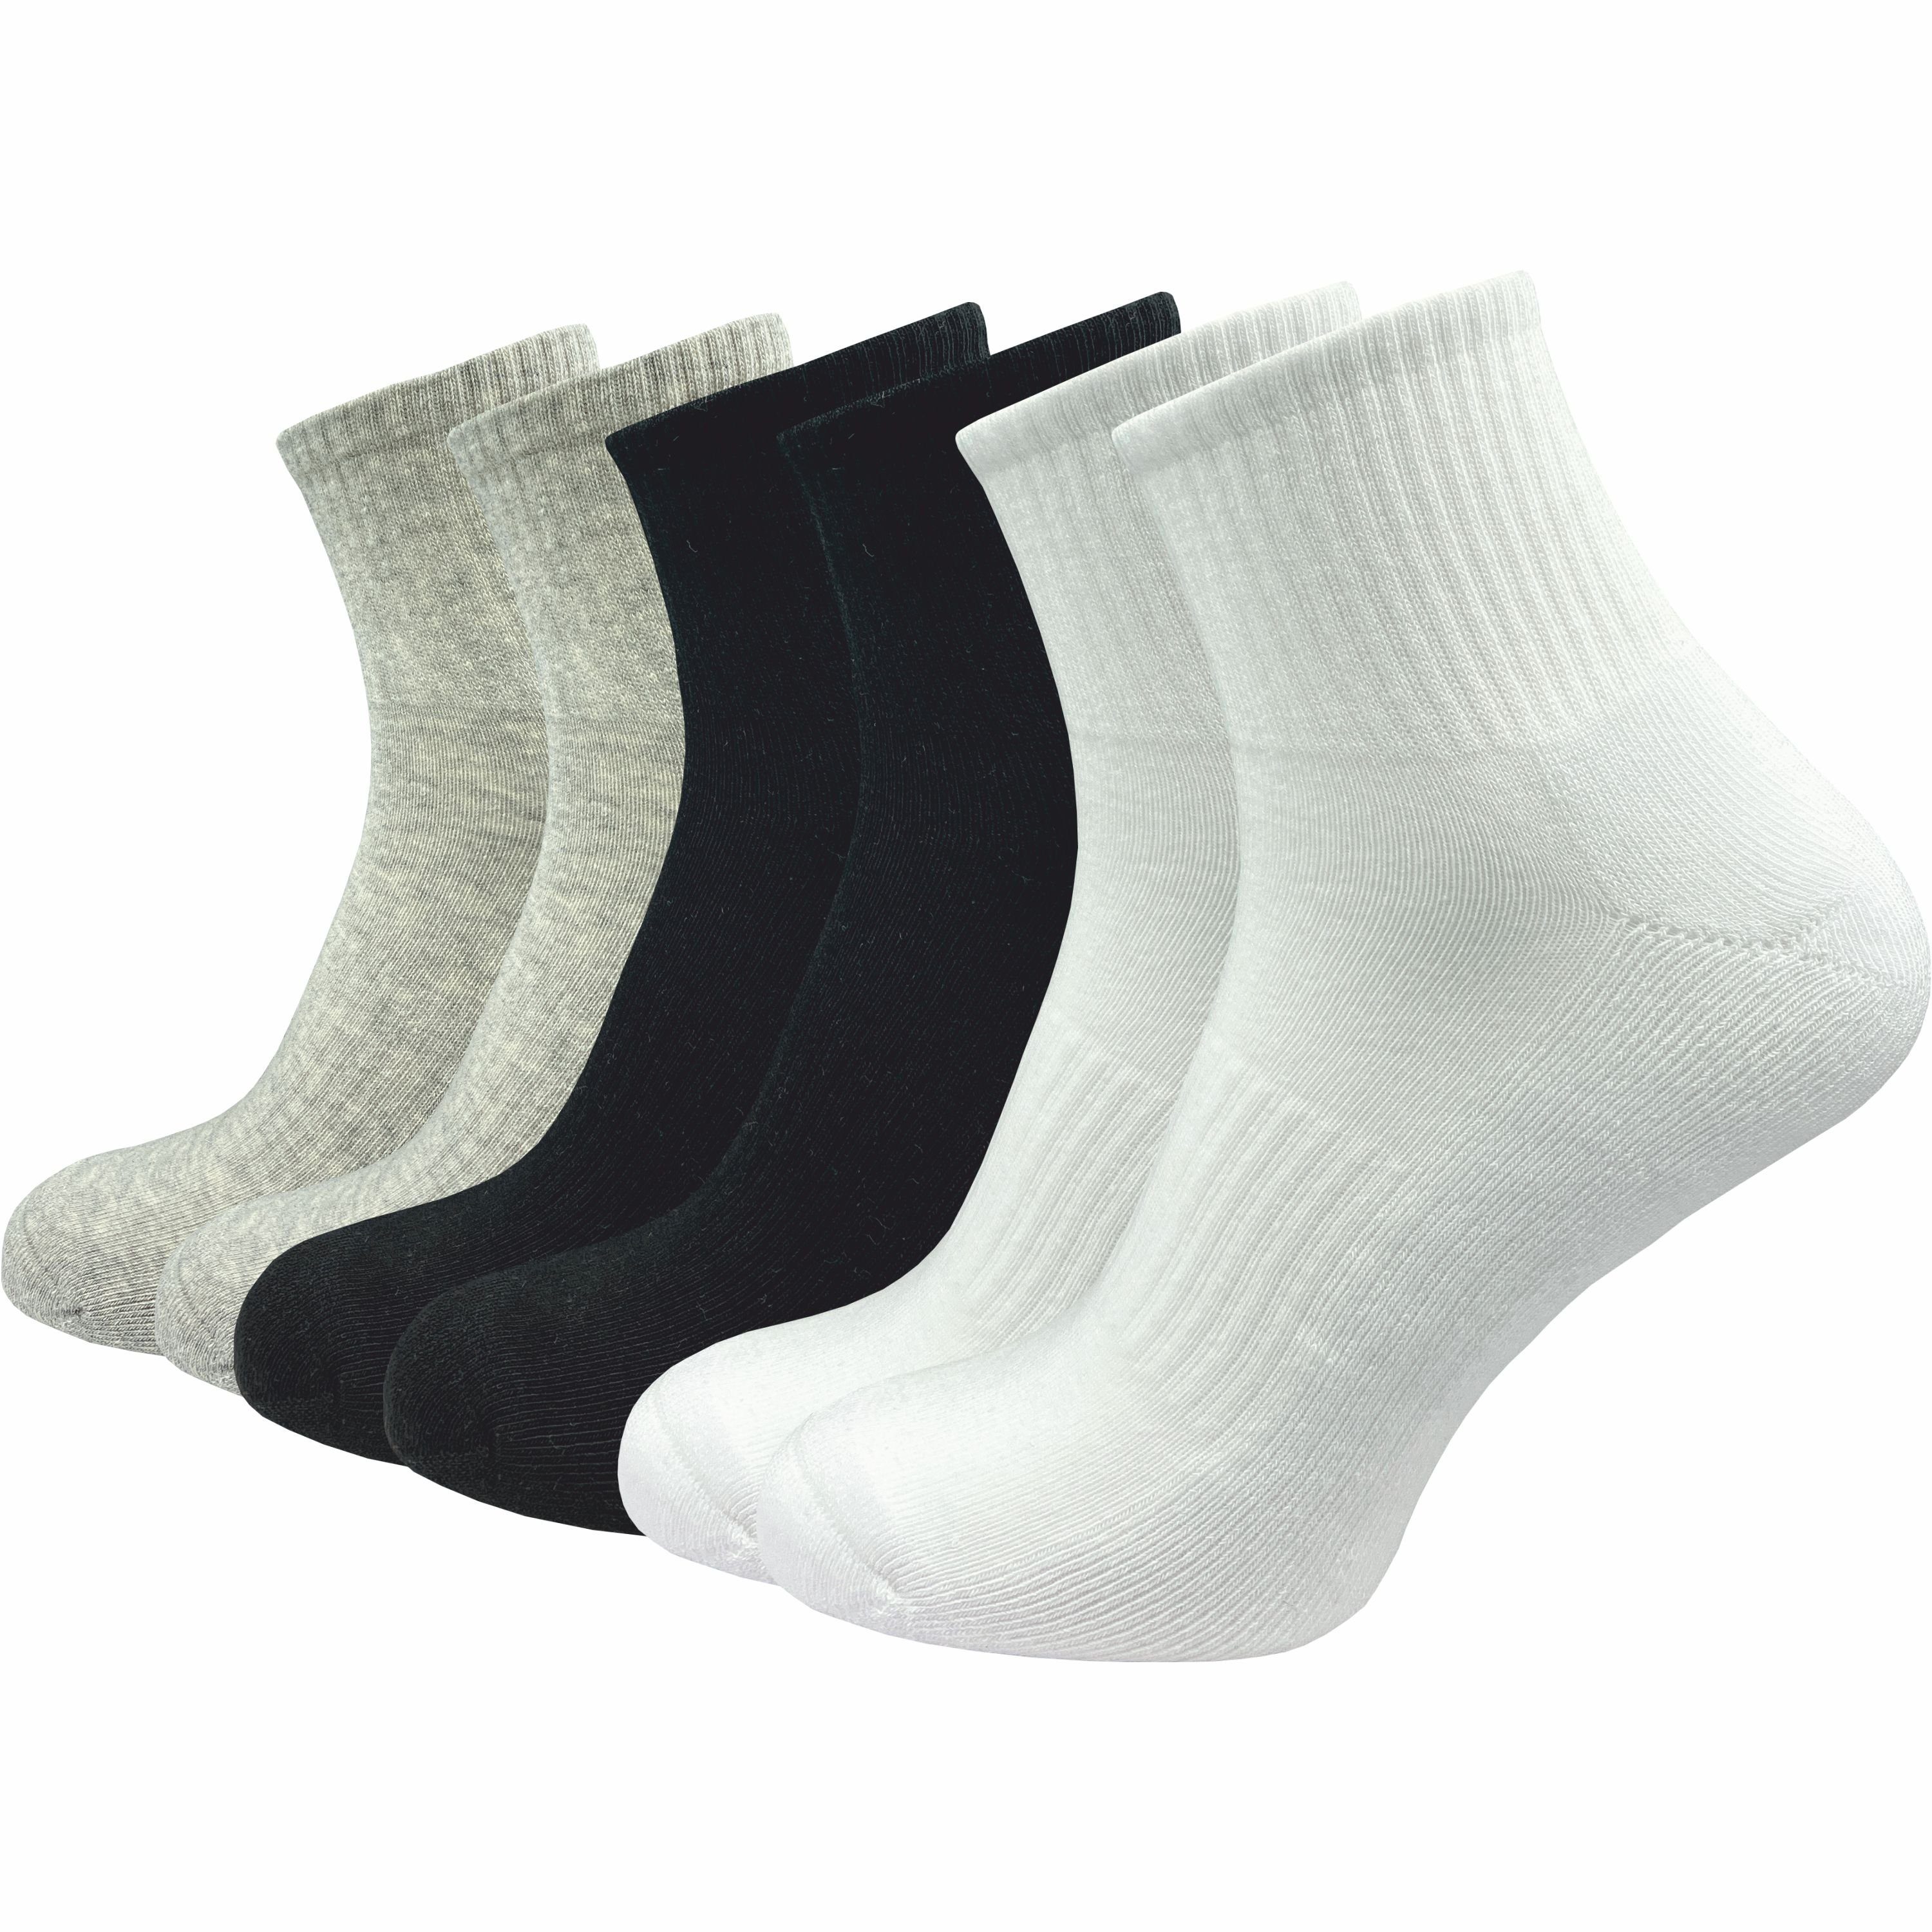 GAWILO Kurzsocken für Damen - Premium Socken für Sport & Freizeit - ohne drückende Naht (6 Paar) in weiß, schwarz & grau; leichte Plüschsohle für höchsten Tragekomfort schwarz, weiß, grau